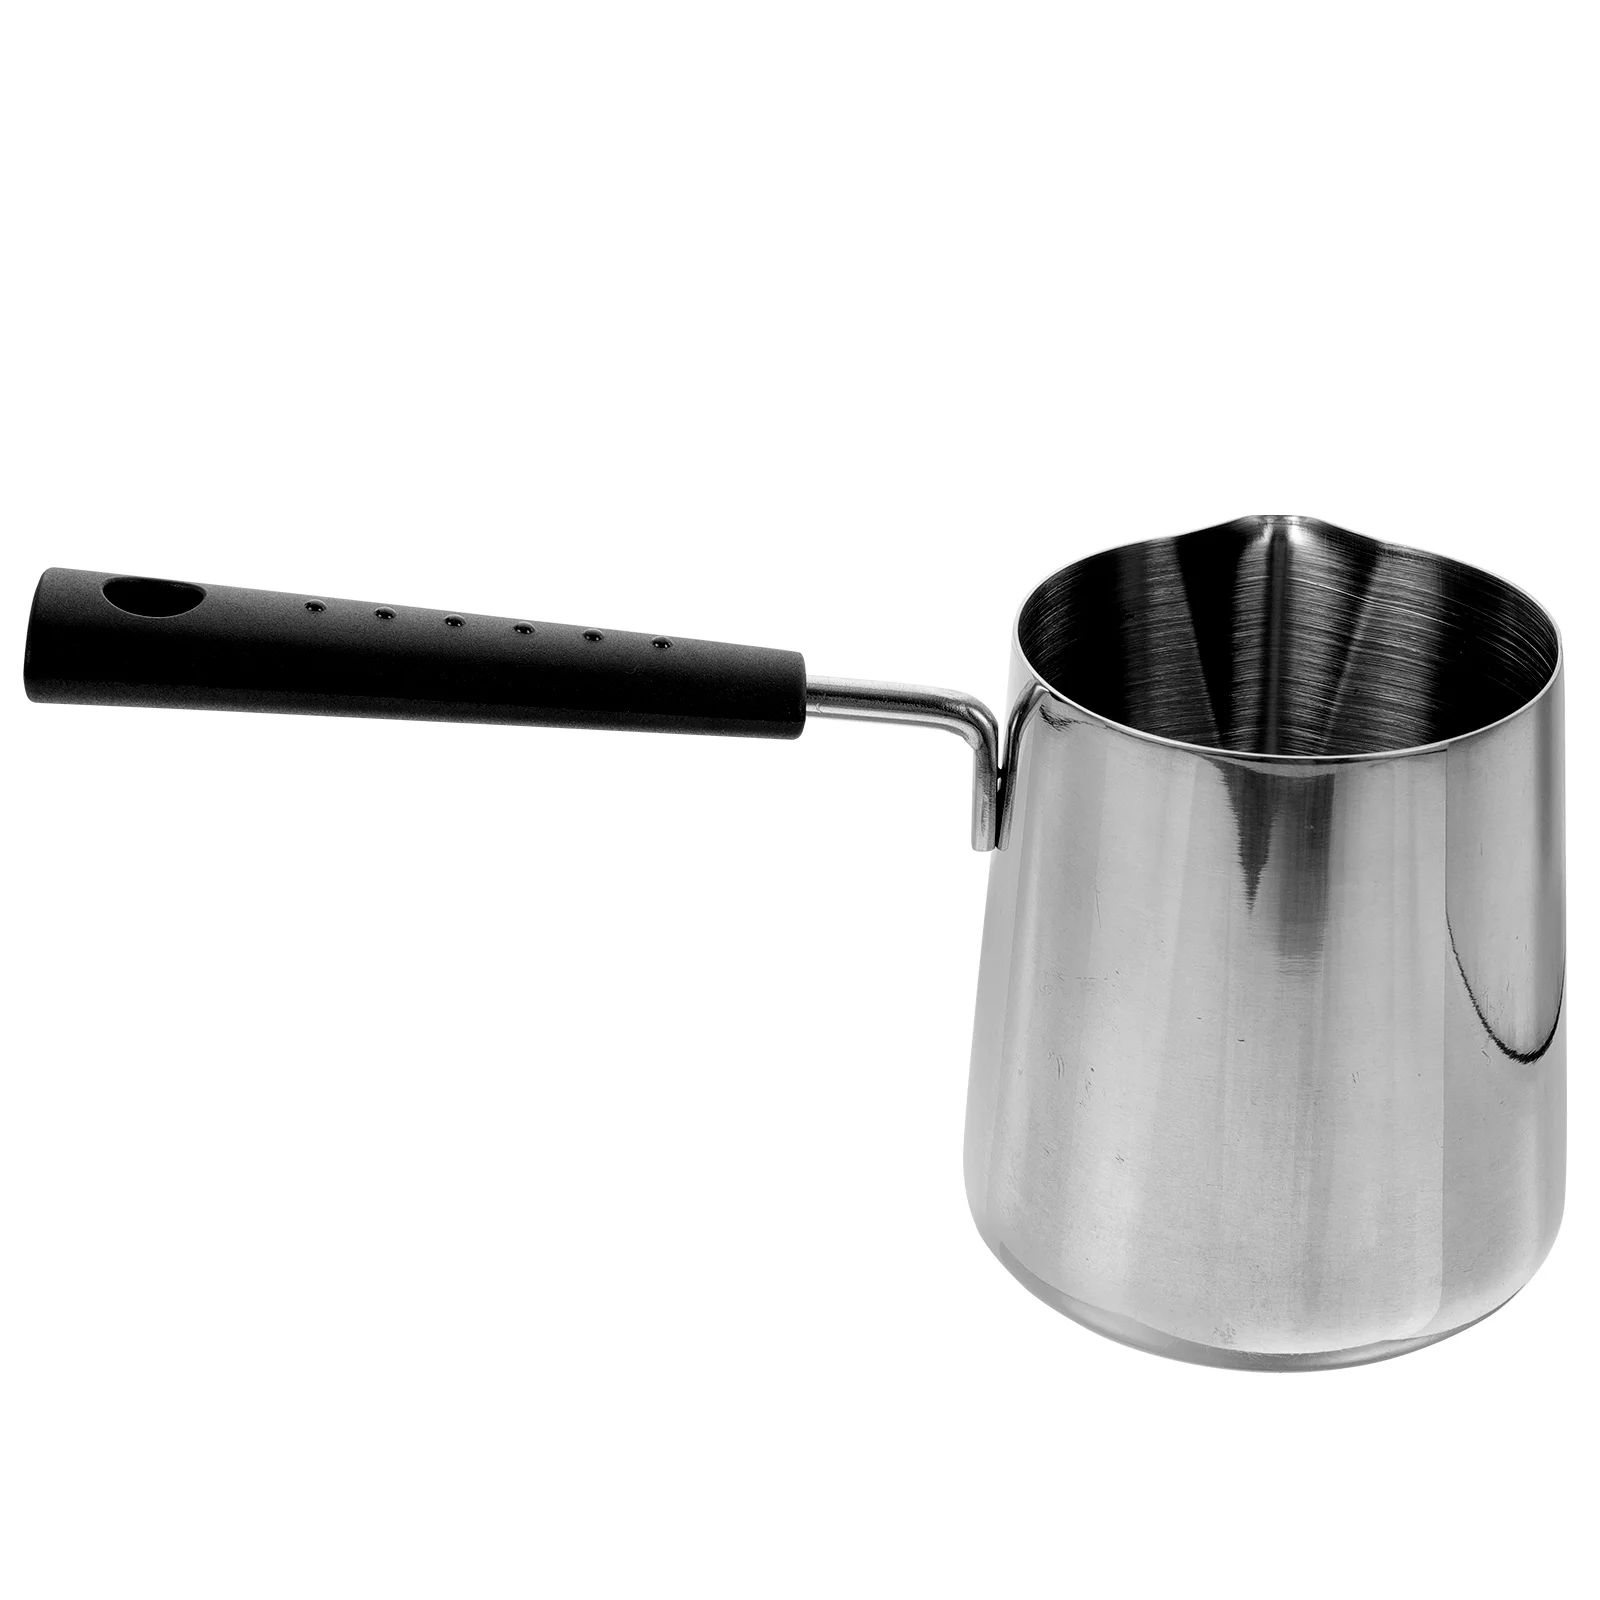 

Cooking Pot Pots Pan Sauce Oil Iron Cast Flat Spout Pour Pasta Soup Saucepan Handheld Stick Non Skillet